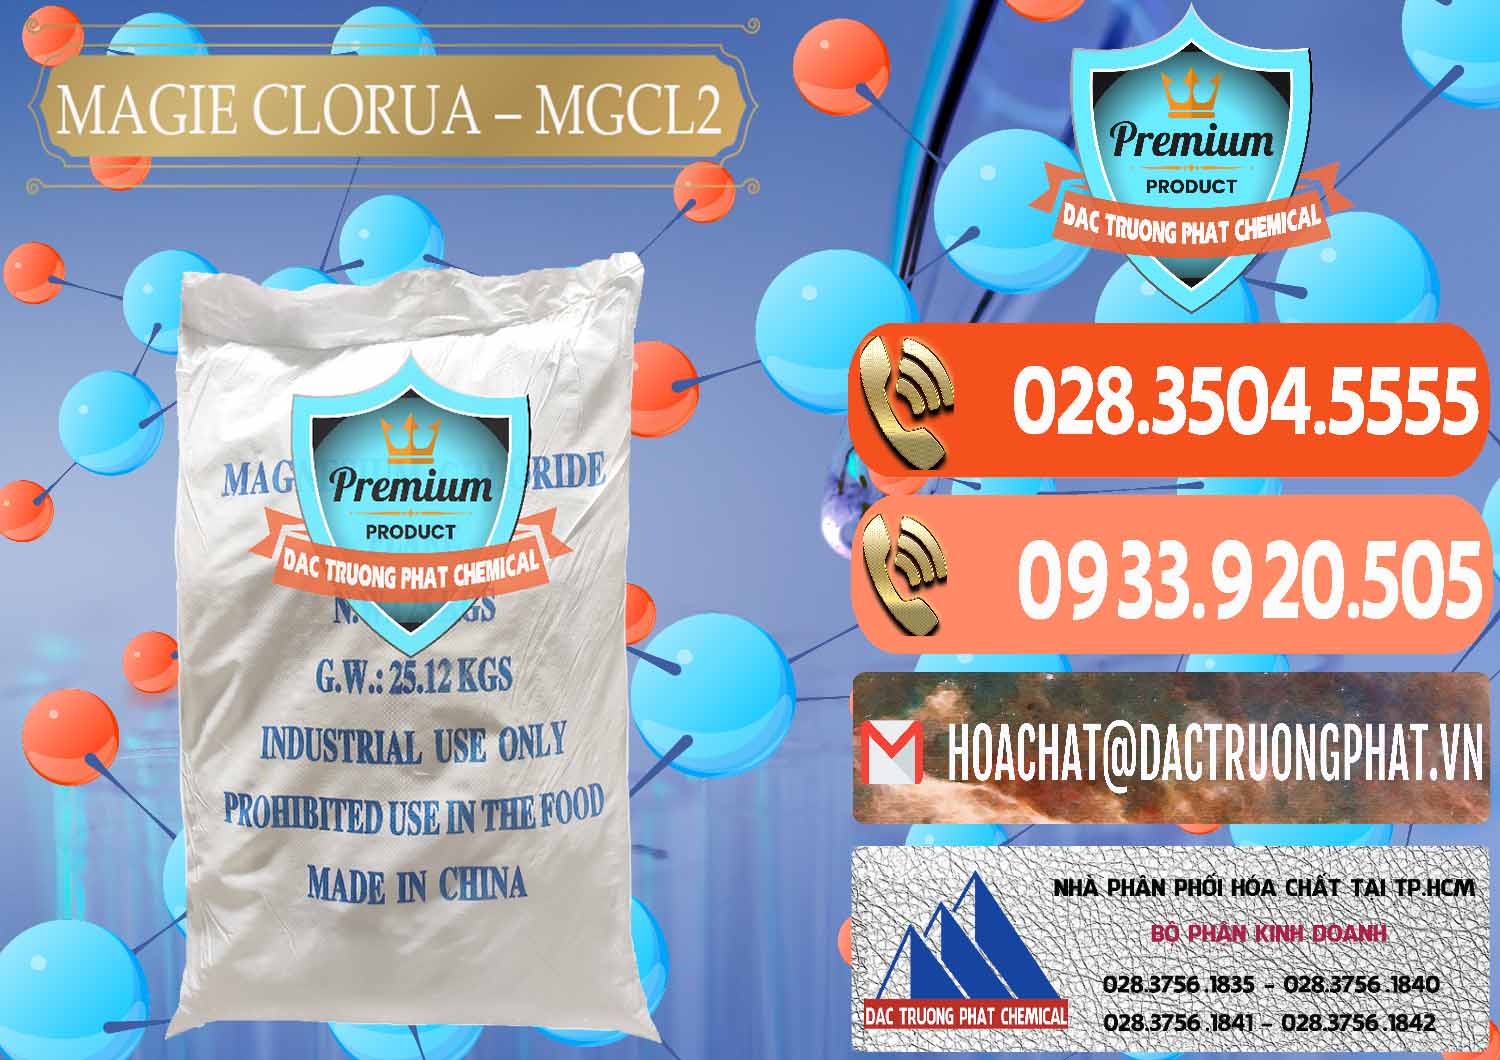 Chuyên phân phối - bán Magie Clorua – MGCL2 96% Dạng Vảy Trung Quốc China - 0091 - Nơi chuyên bán _ cung cấp hóa chất tại TP.HCM - hoachatmientay.com